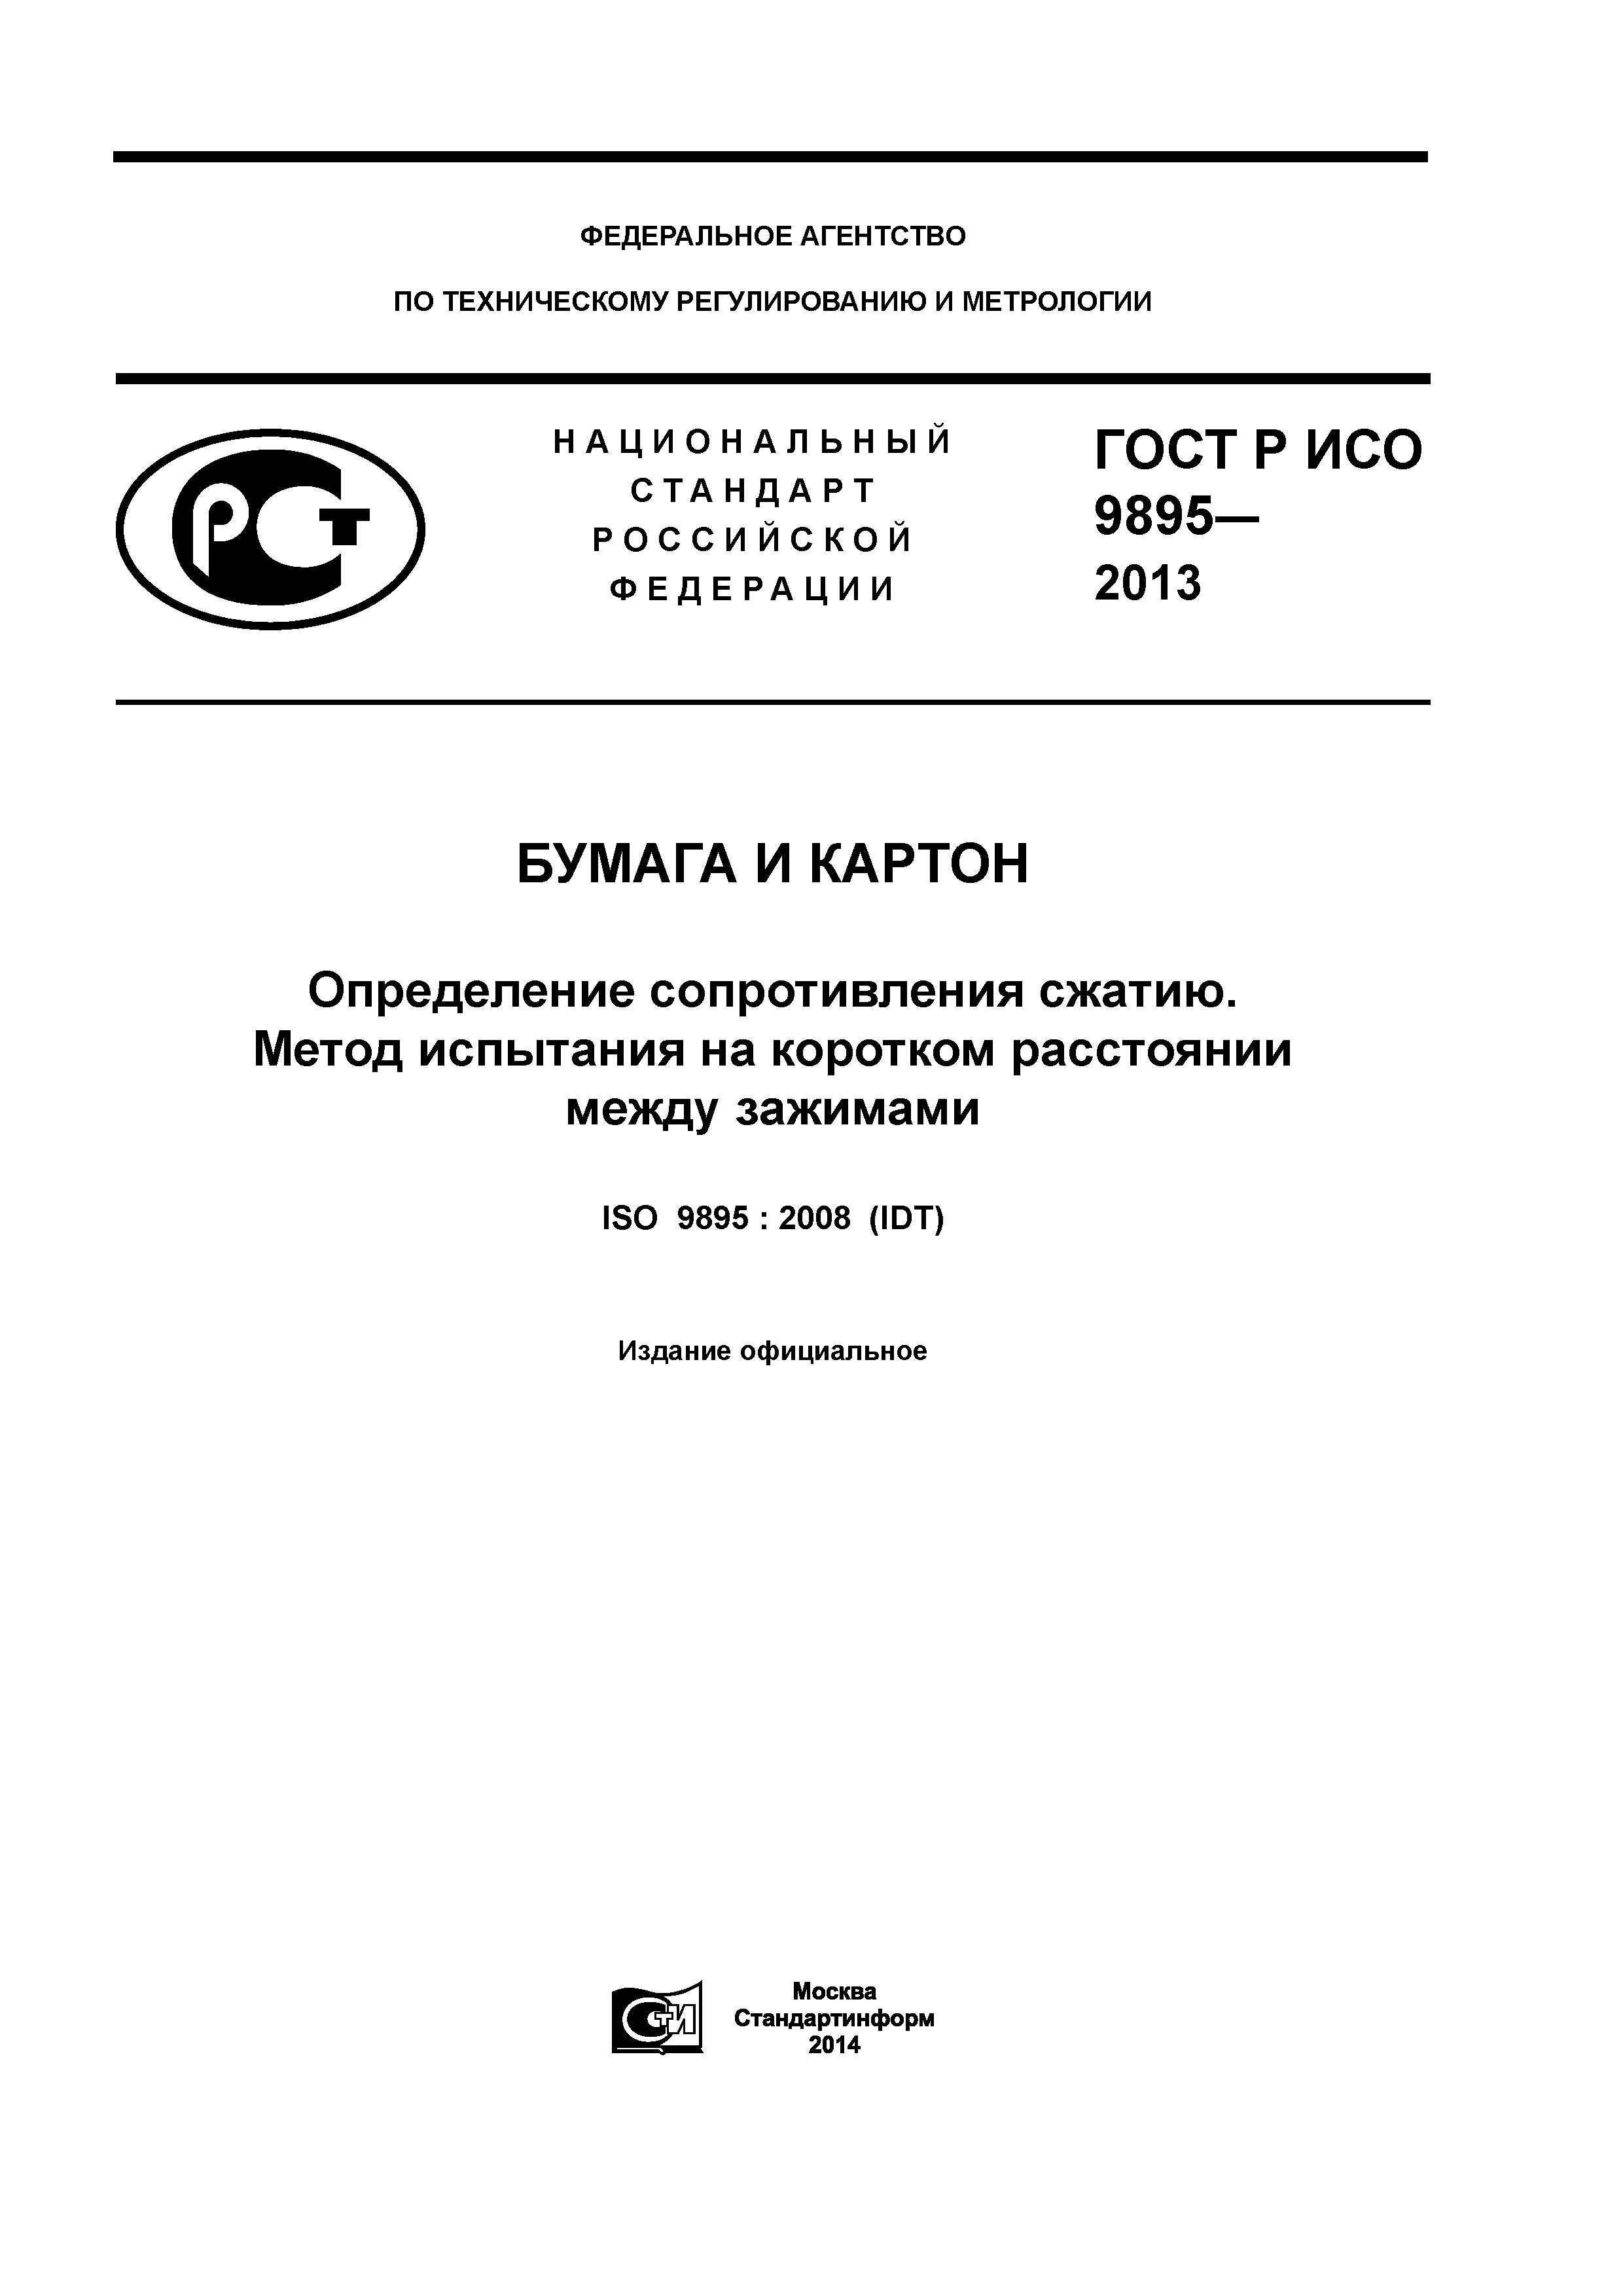 ГОСТ Р ИСО 9895-2013